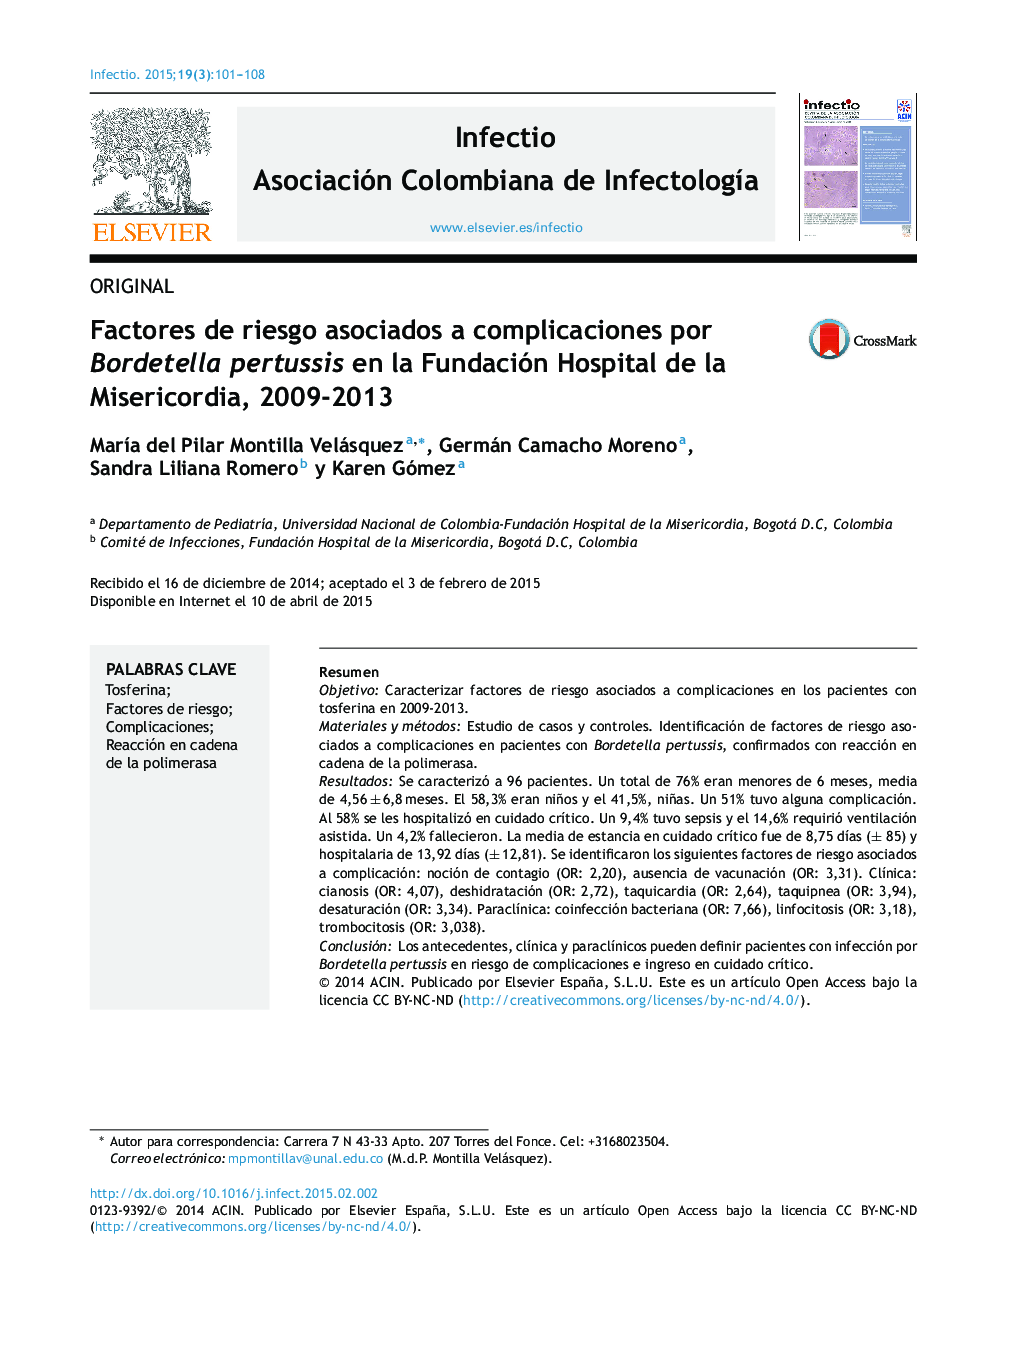 Factores de riesgo asociados a complicaciones por Bordetella pertussis en la Fundación Hospital de la Misericordia, 2009-2013